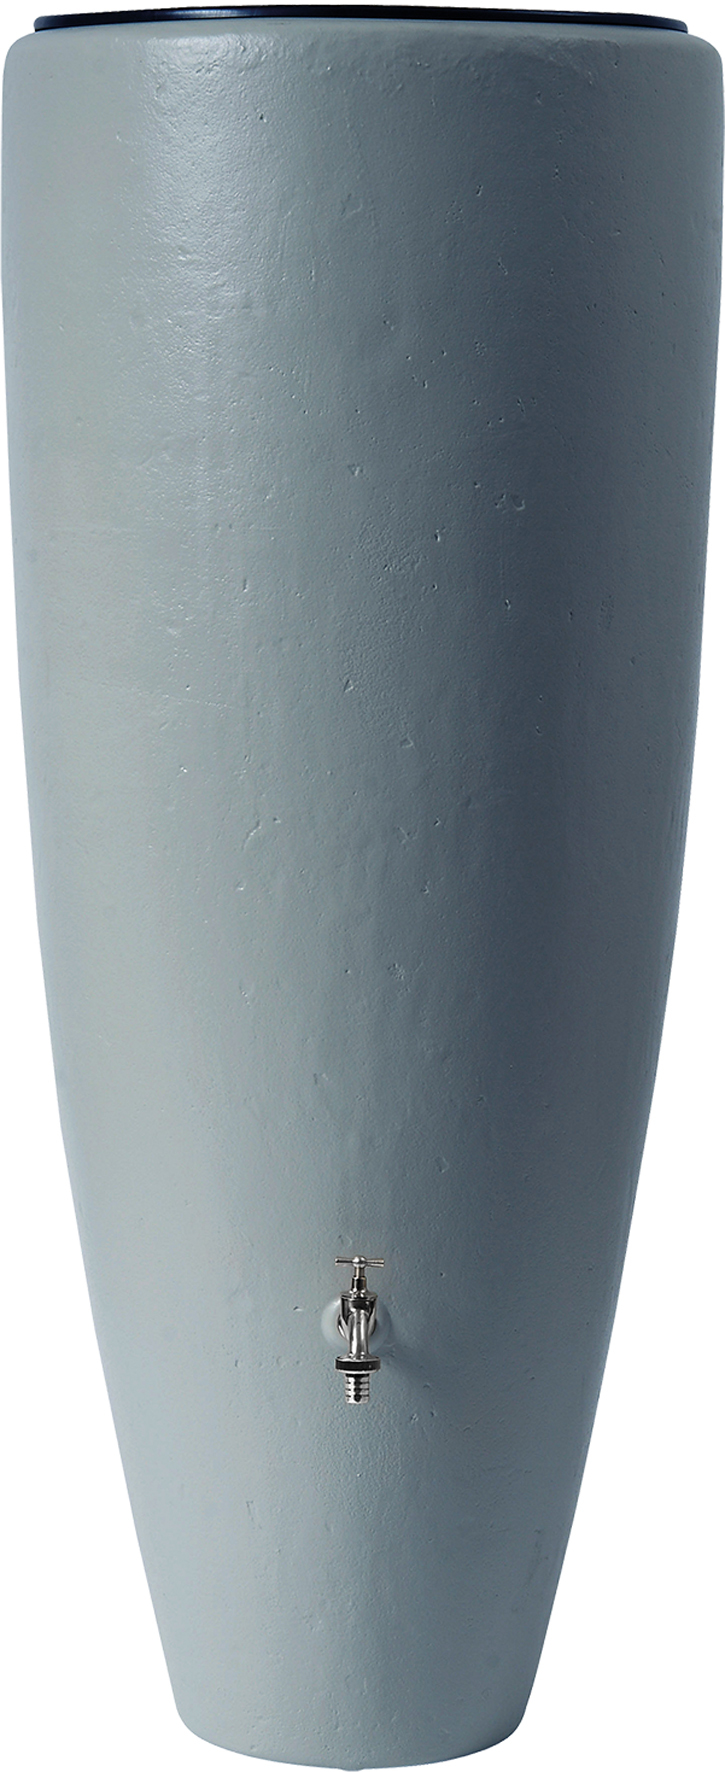 2in1 Wasserbehälter von GRAF mit 2 Funktionen im modernen Design